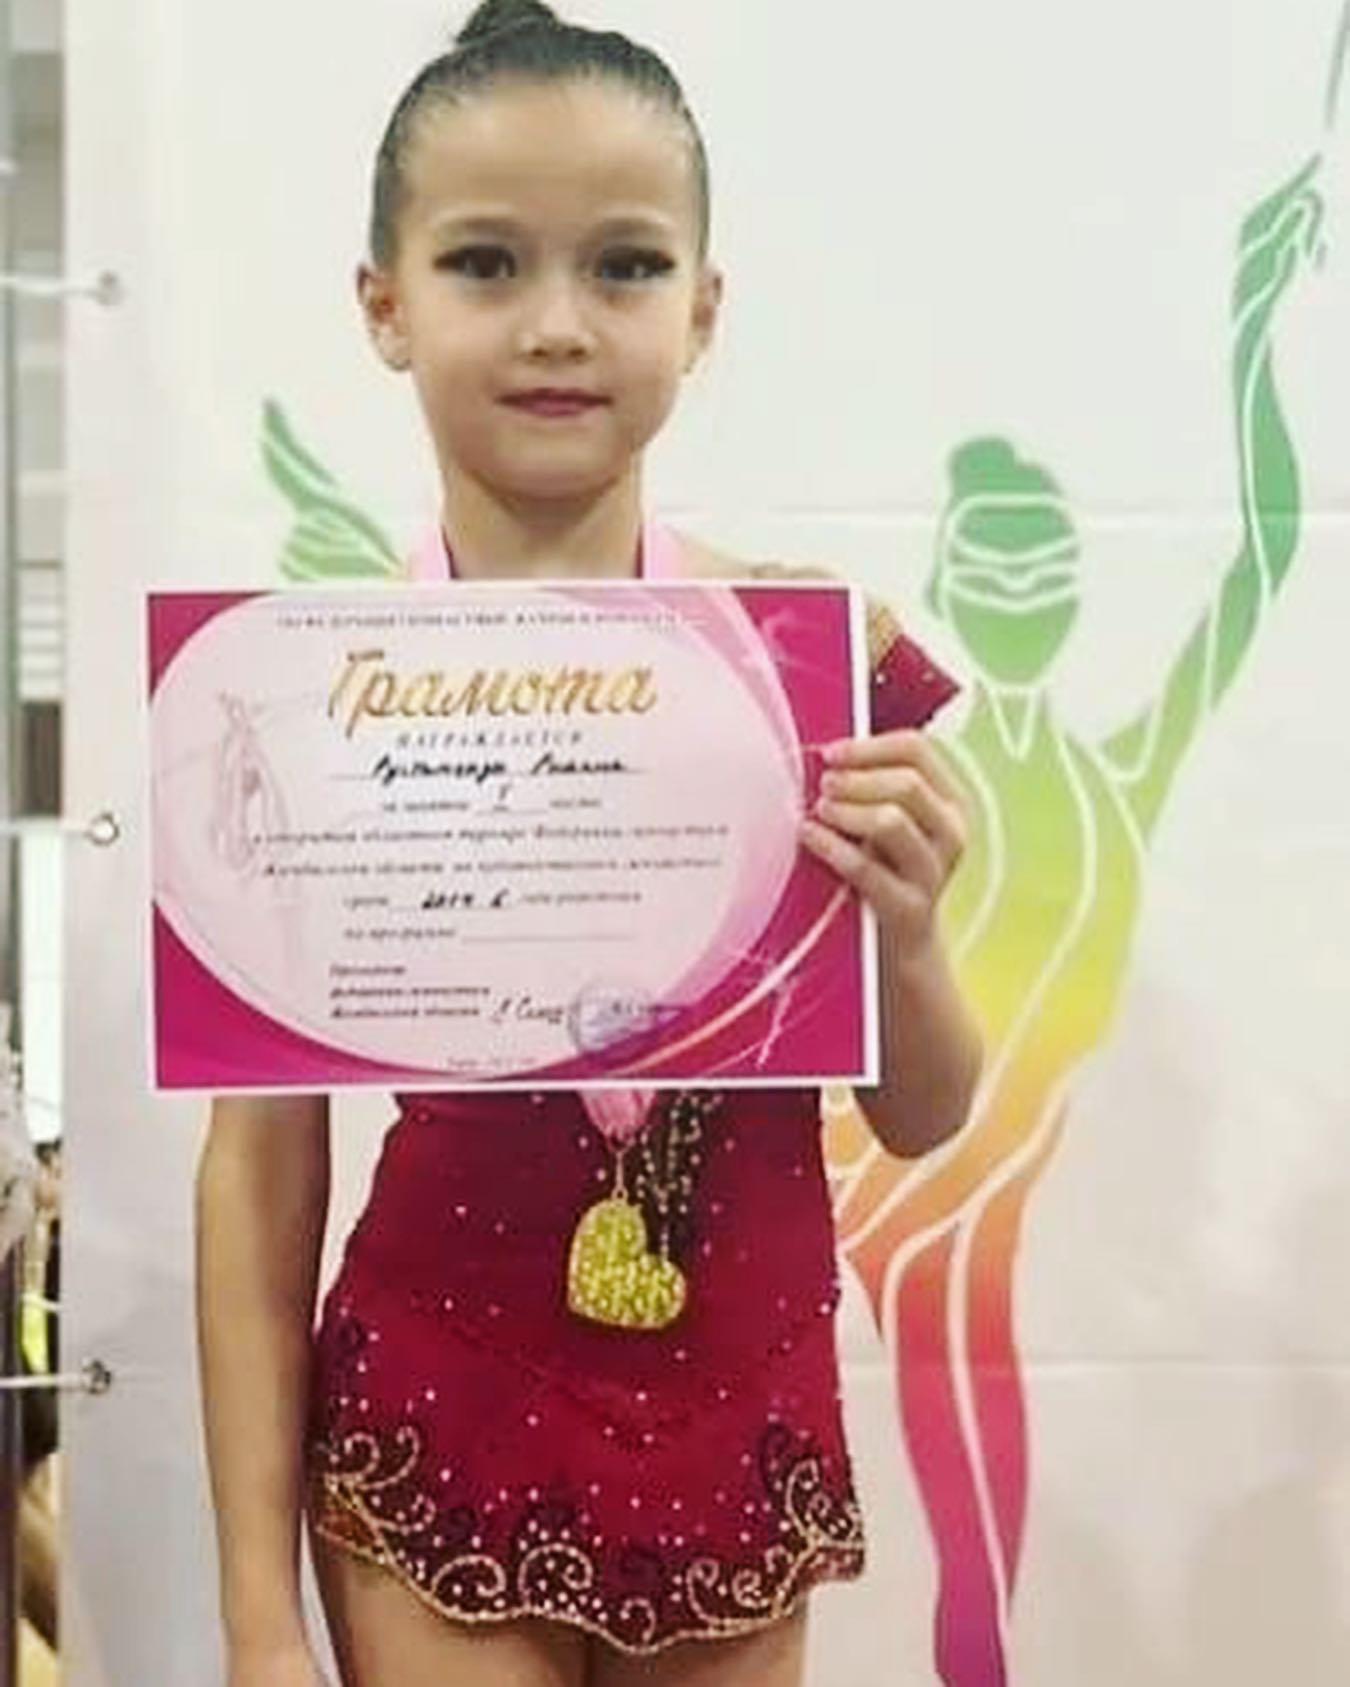 3 "Д" сынып оқушысы Рустамқызы Рианна Жамбыл облысының гимнастика федерациясының көркем гимнастикадан ашық облыстық турнирінде 1 орын алды.